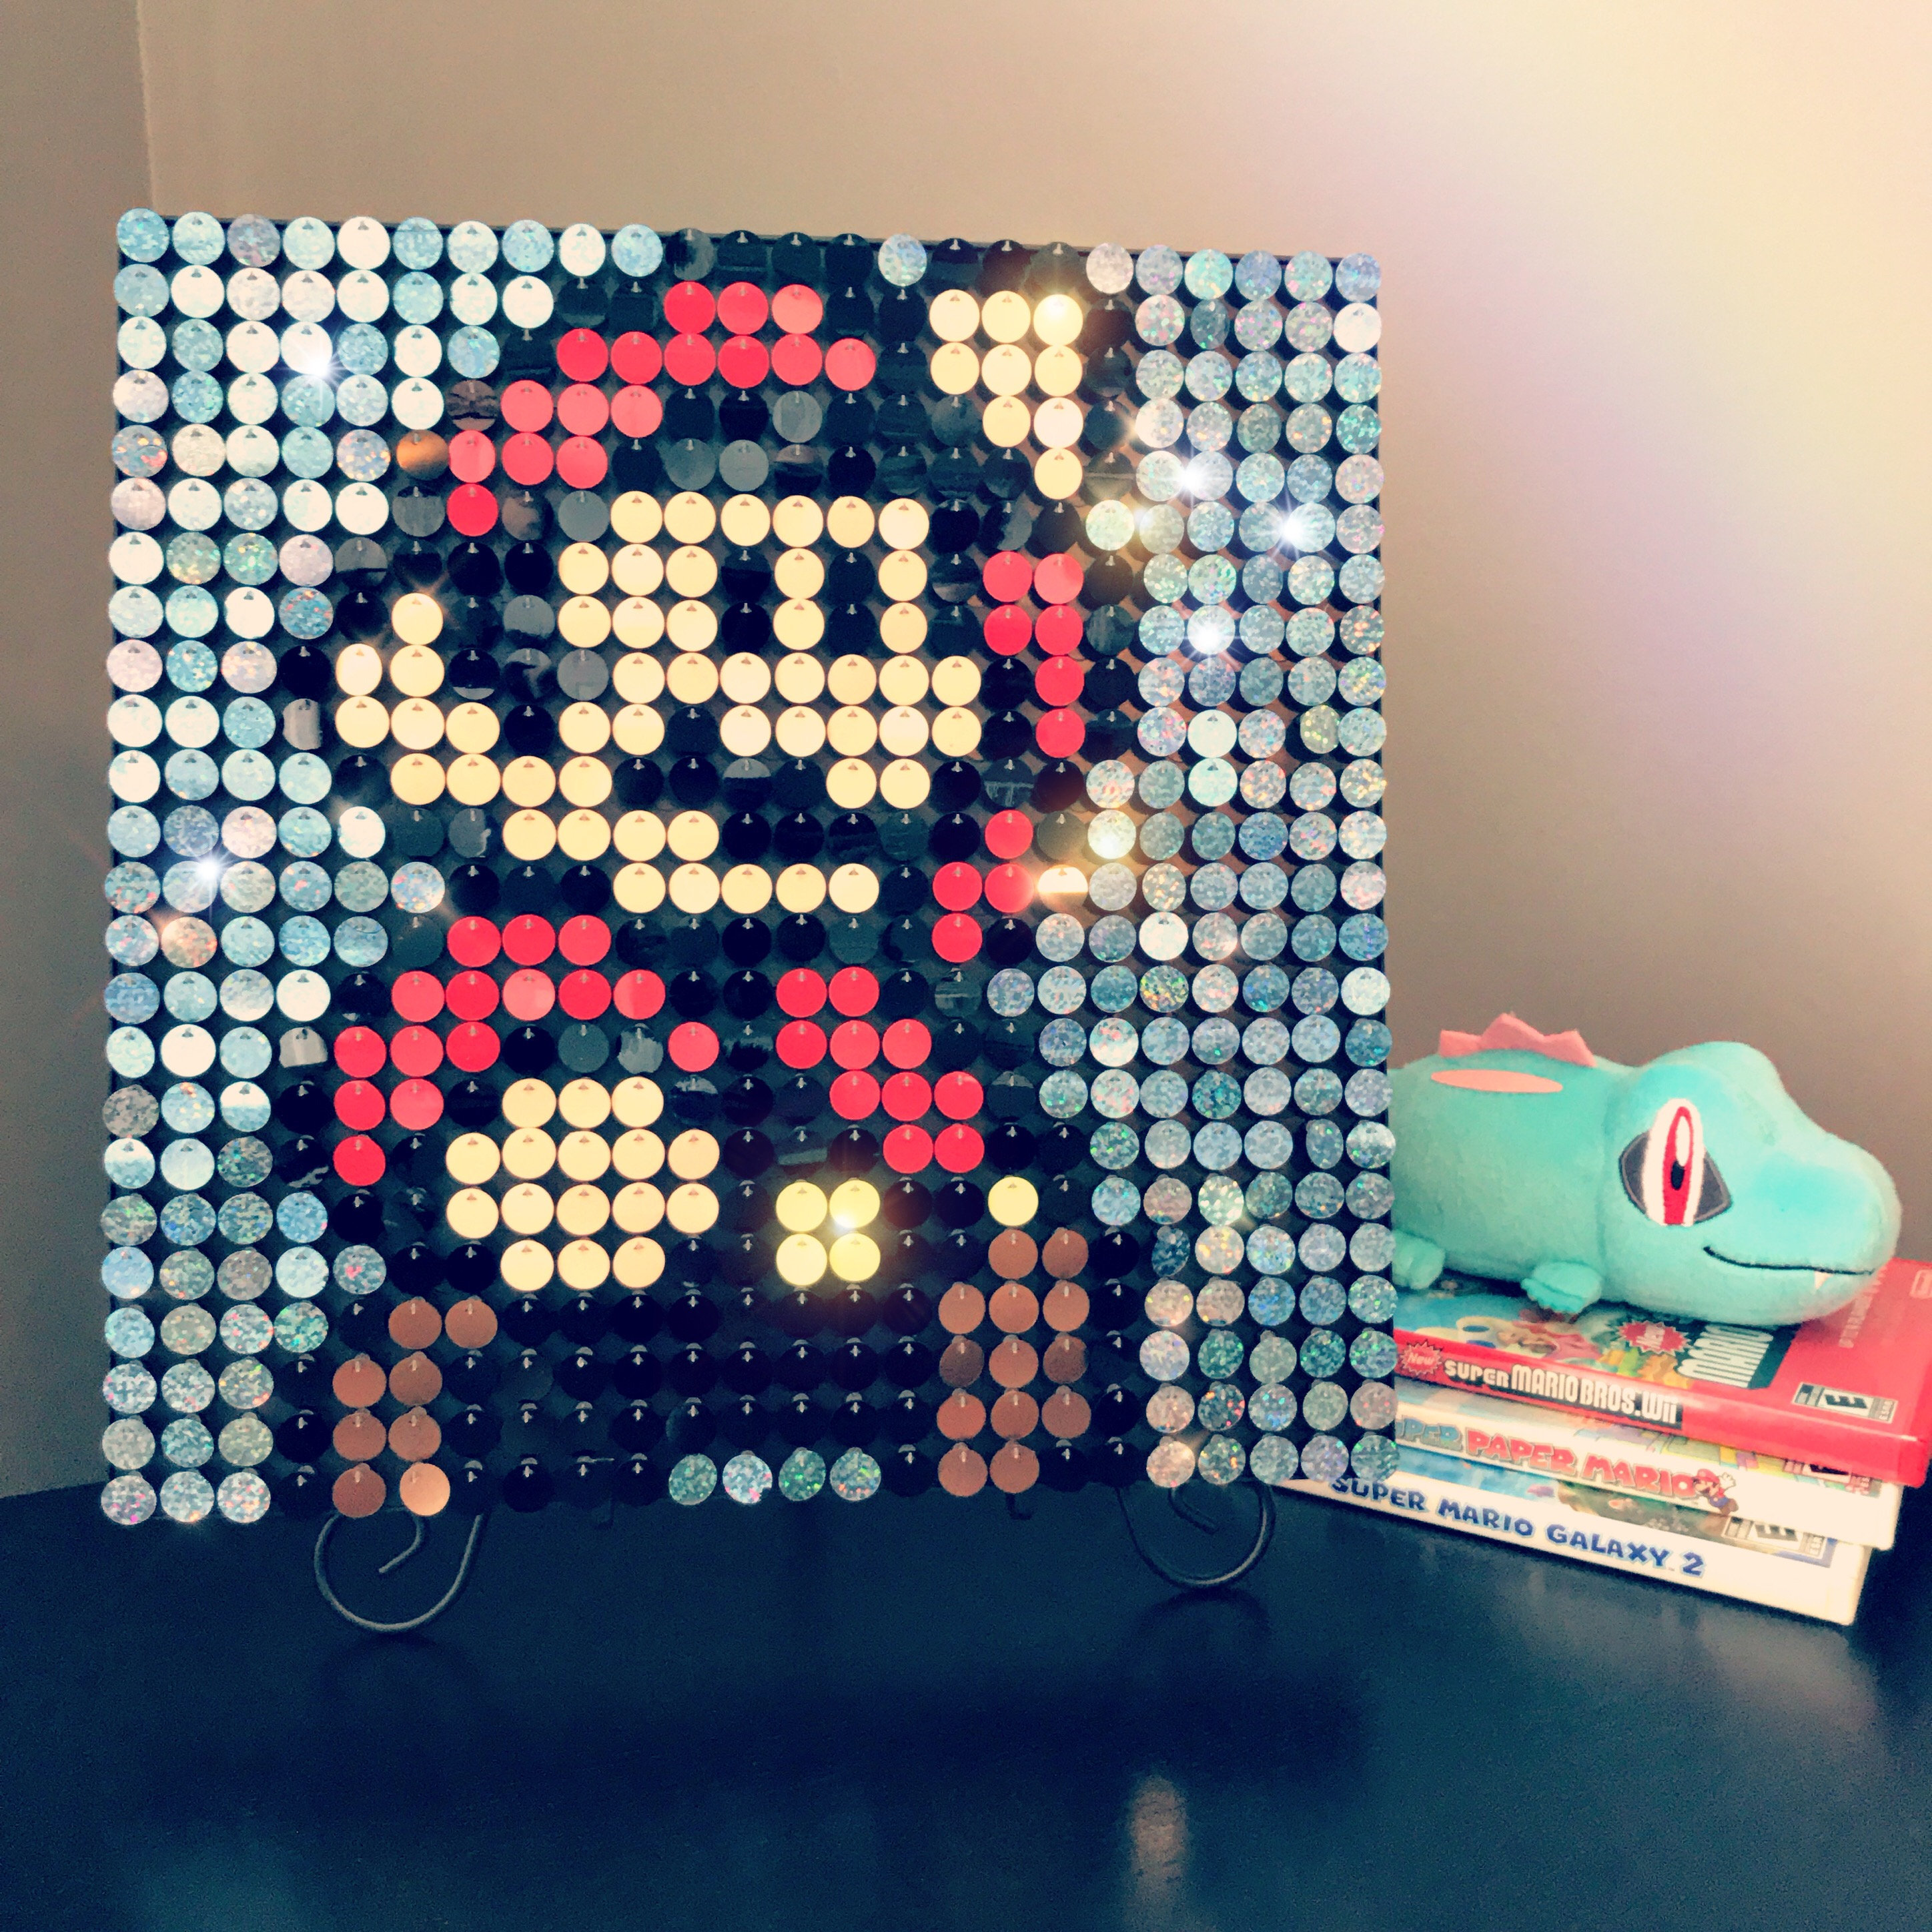 Pikachu Sequin Pixel Art Craft Kit Do-it-yourself Wall Art 